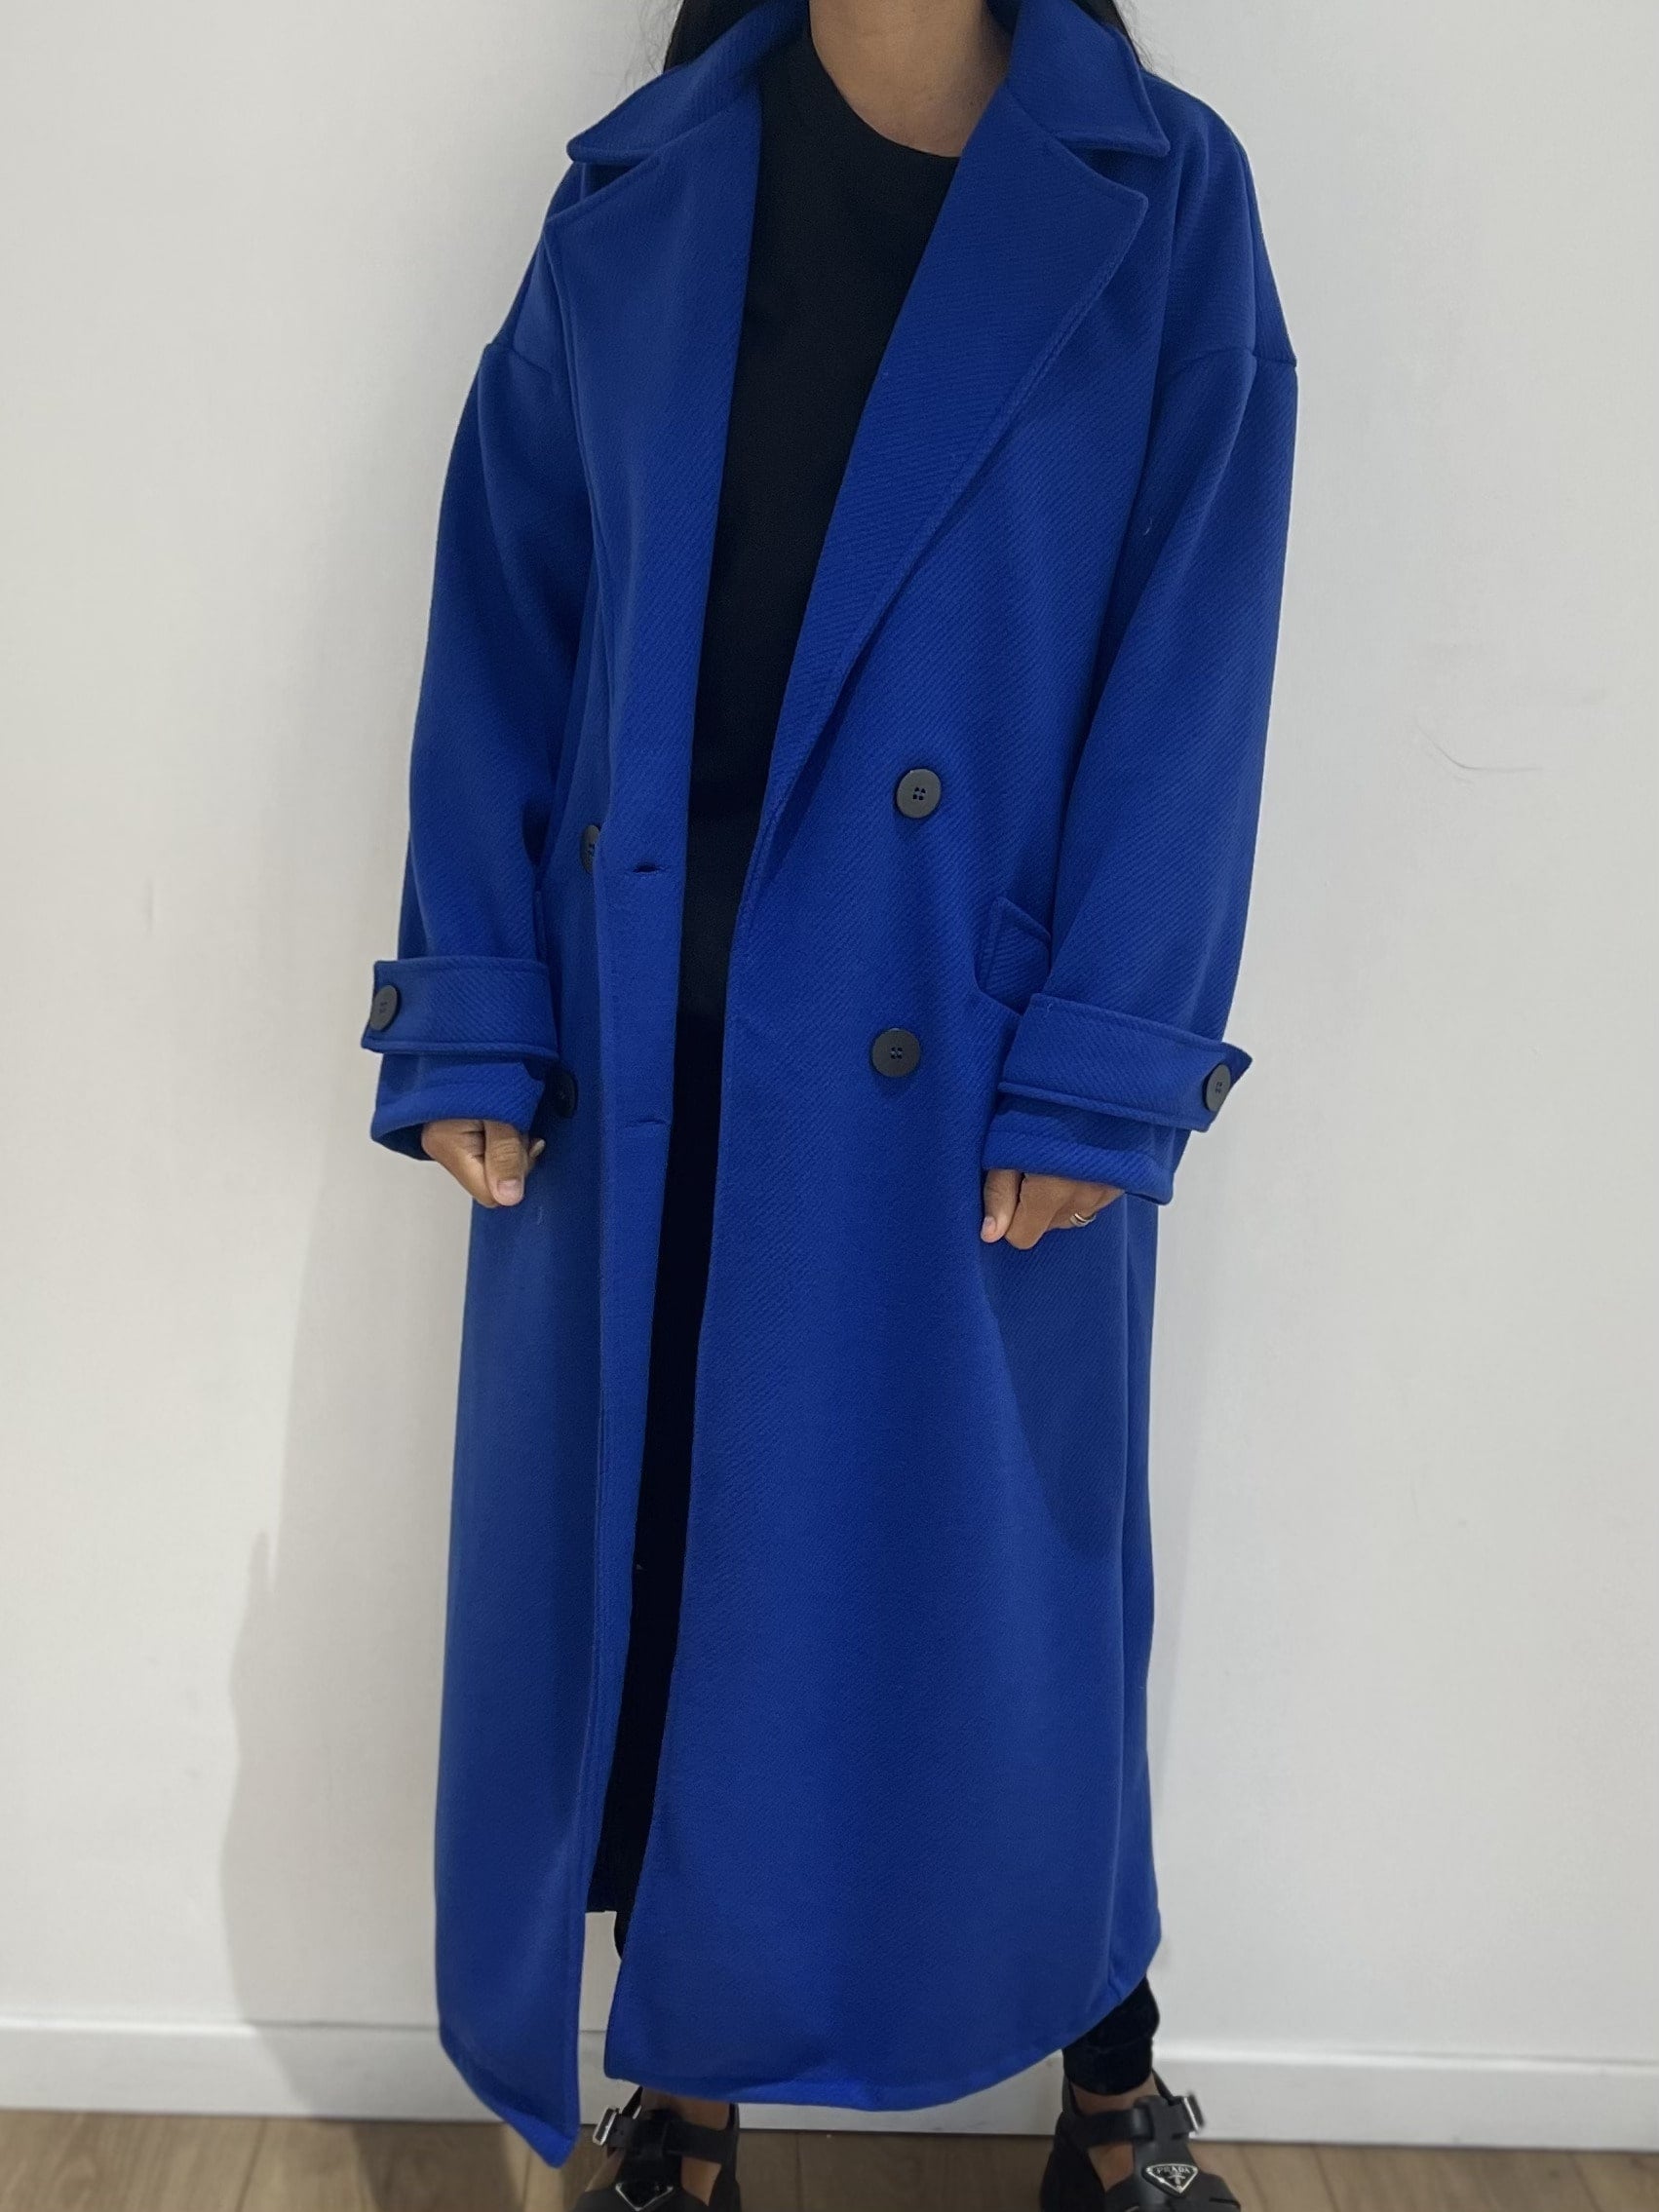 Manteau en laine bleu roi, élégant et oversize pour une silhouette moderne